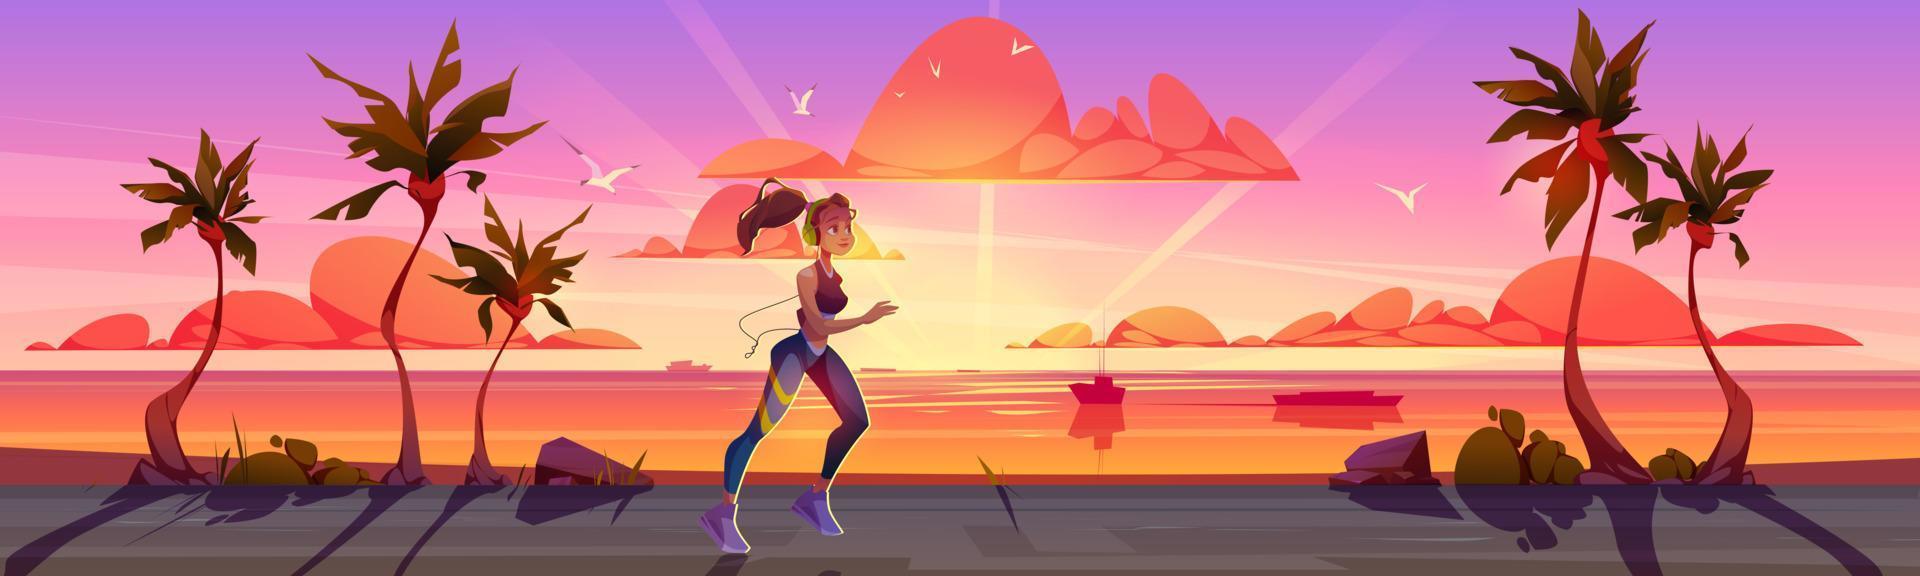 kvinna springa på handflatan väg på solnedgång vektor bakgrund